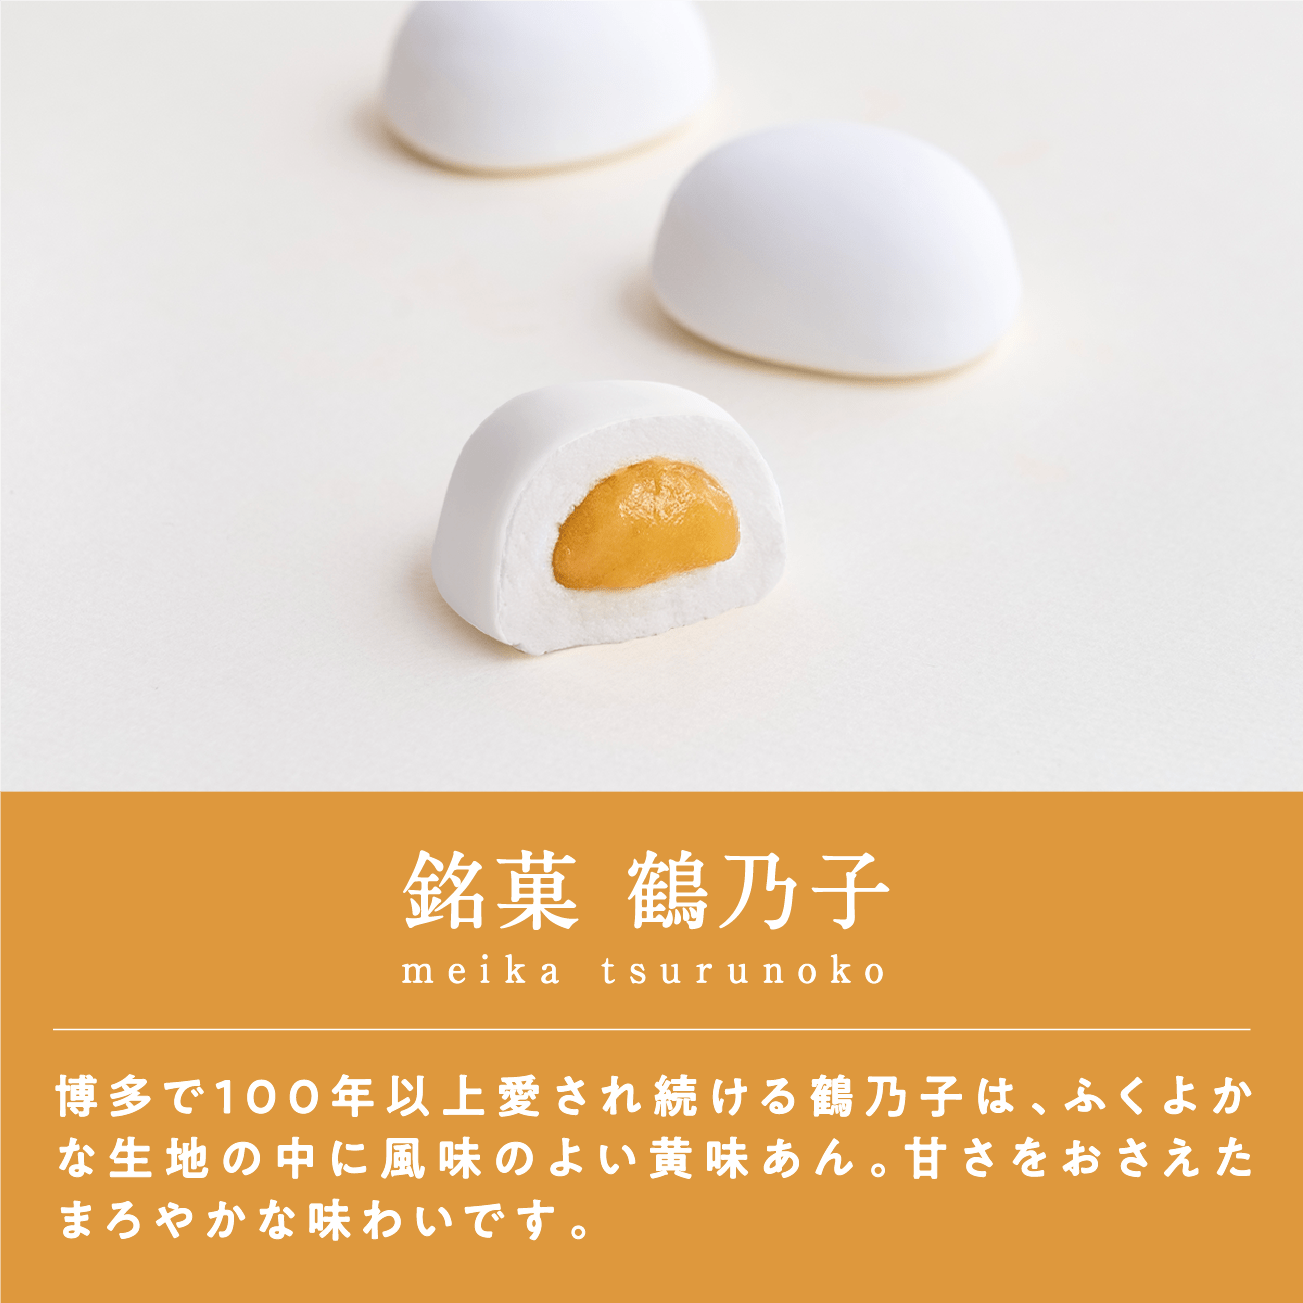 銘菓 鶴乃子博多で100年以上愛され続ける鶴乃子は、ふくよかな生地の中に風味のよい黄味あん。甘さをおさえたまろやかな味わいです。